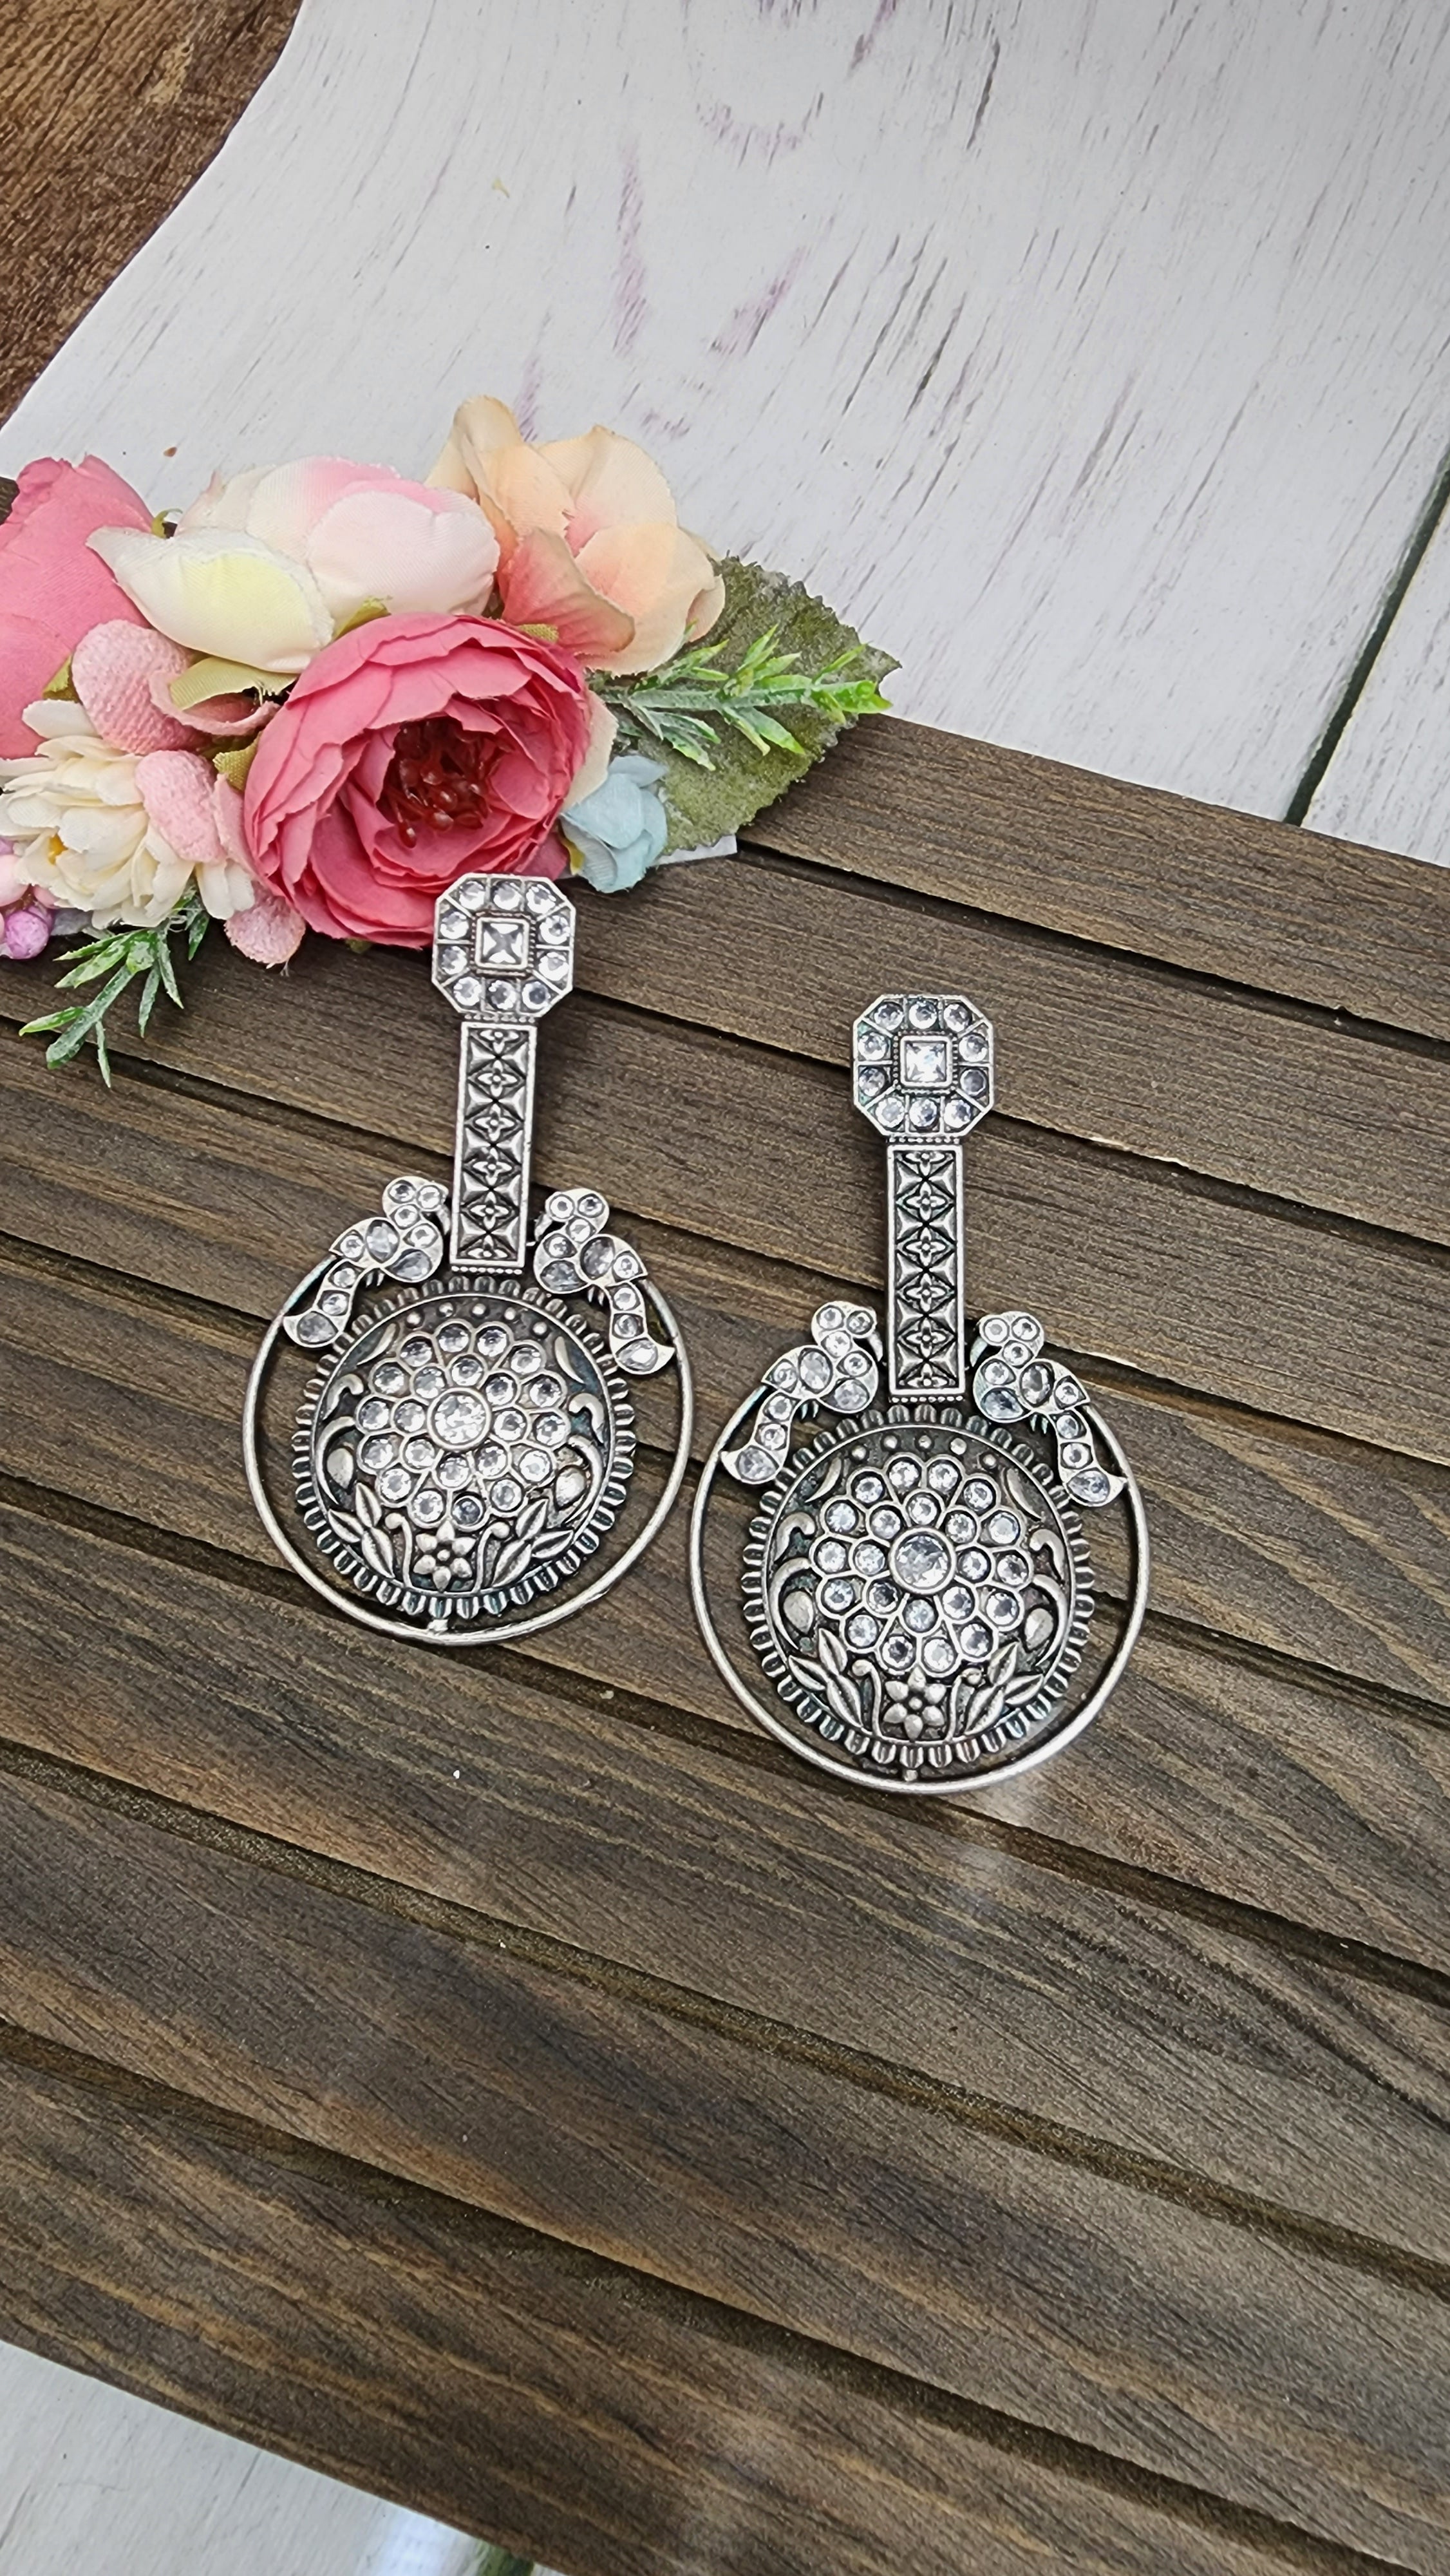 Silver alike chandbali earrings